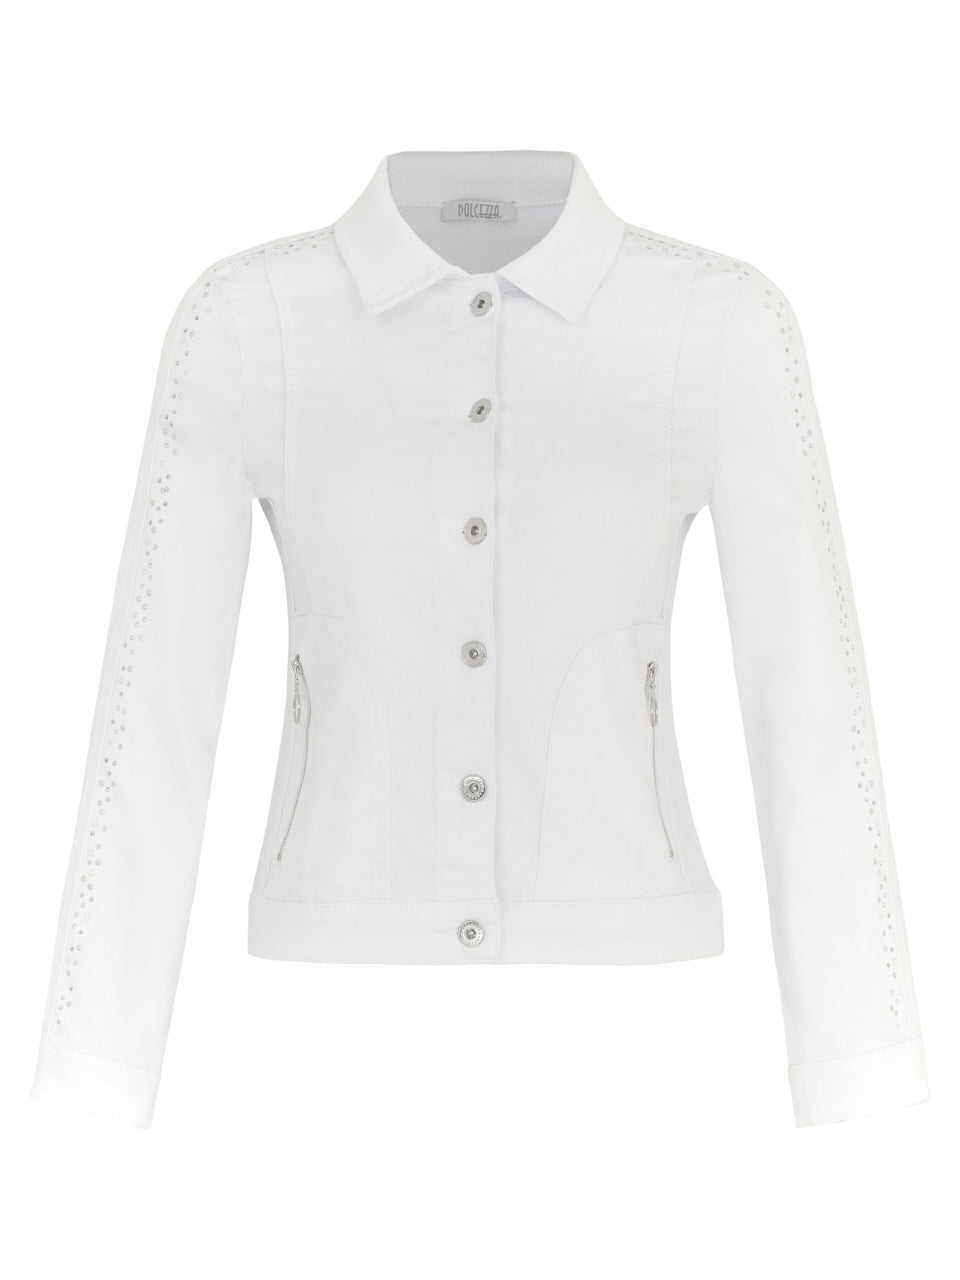 <p>Dolcezza white denim jacket with diamanté detail</p>
<p>Product code 24203</p>